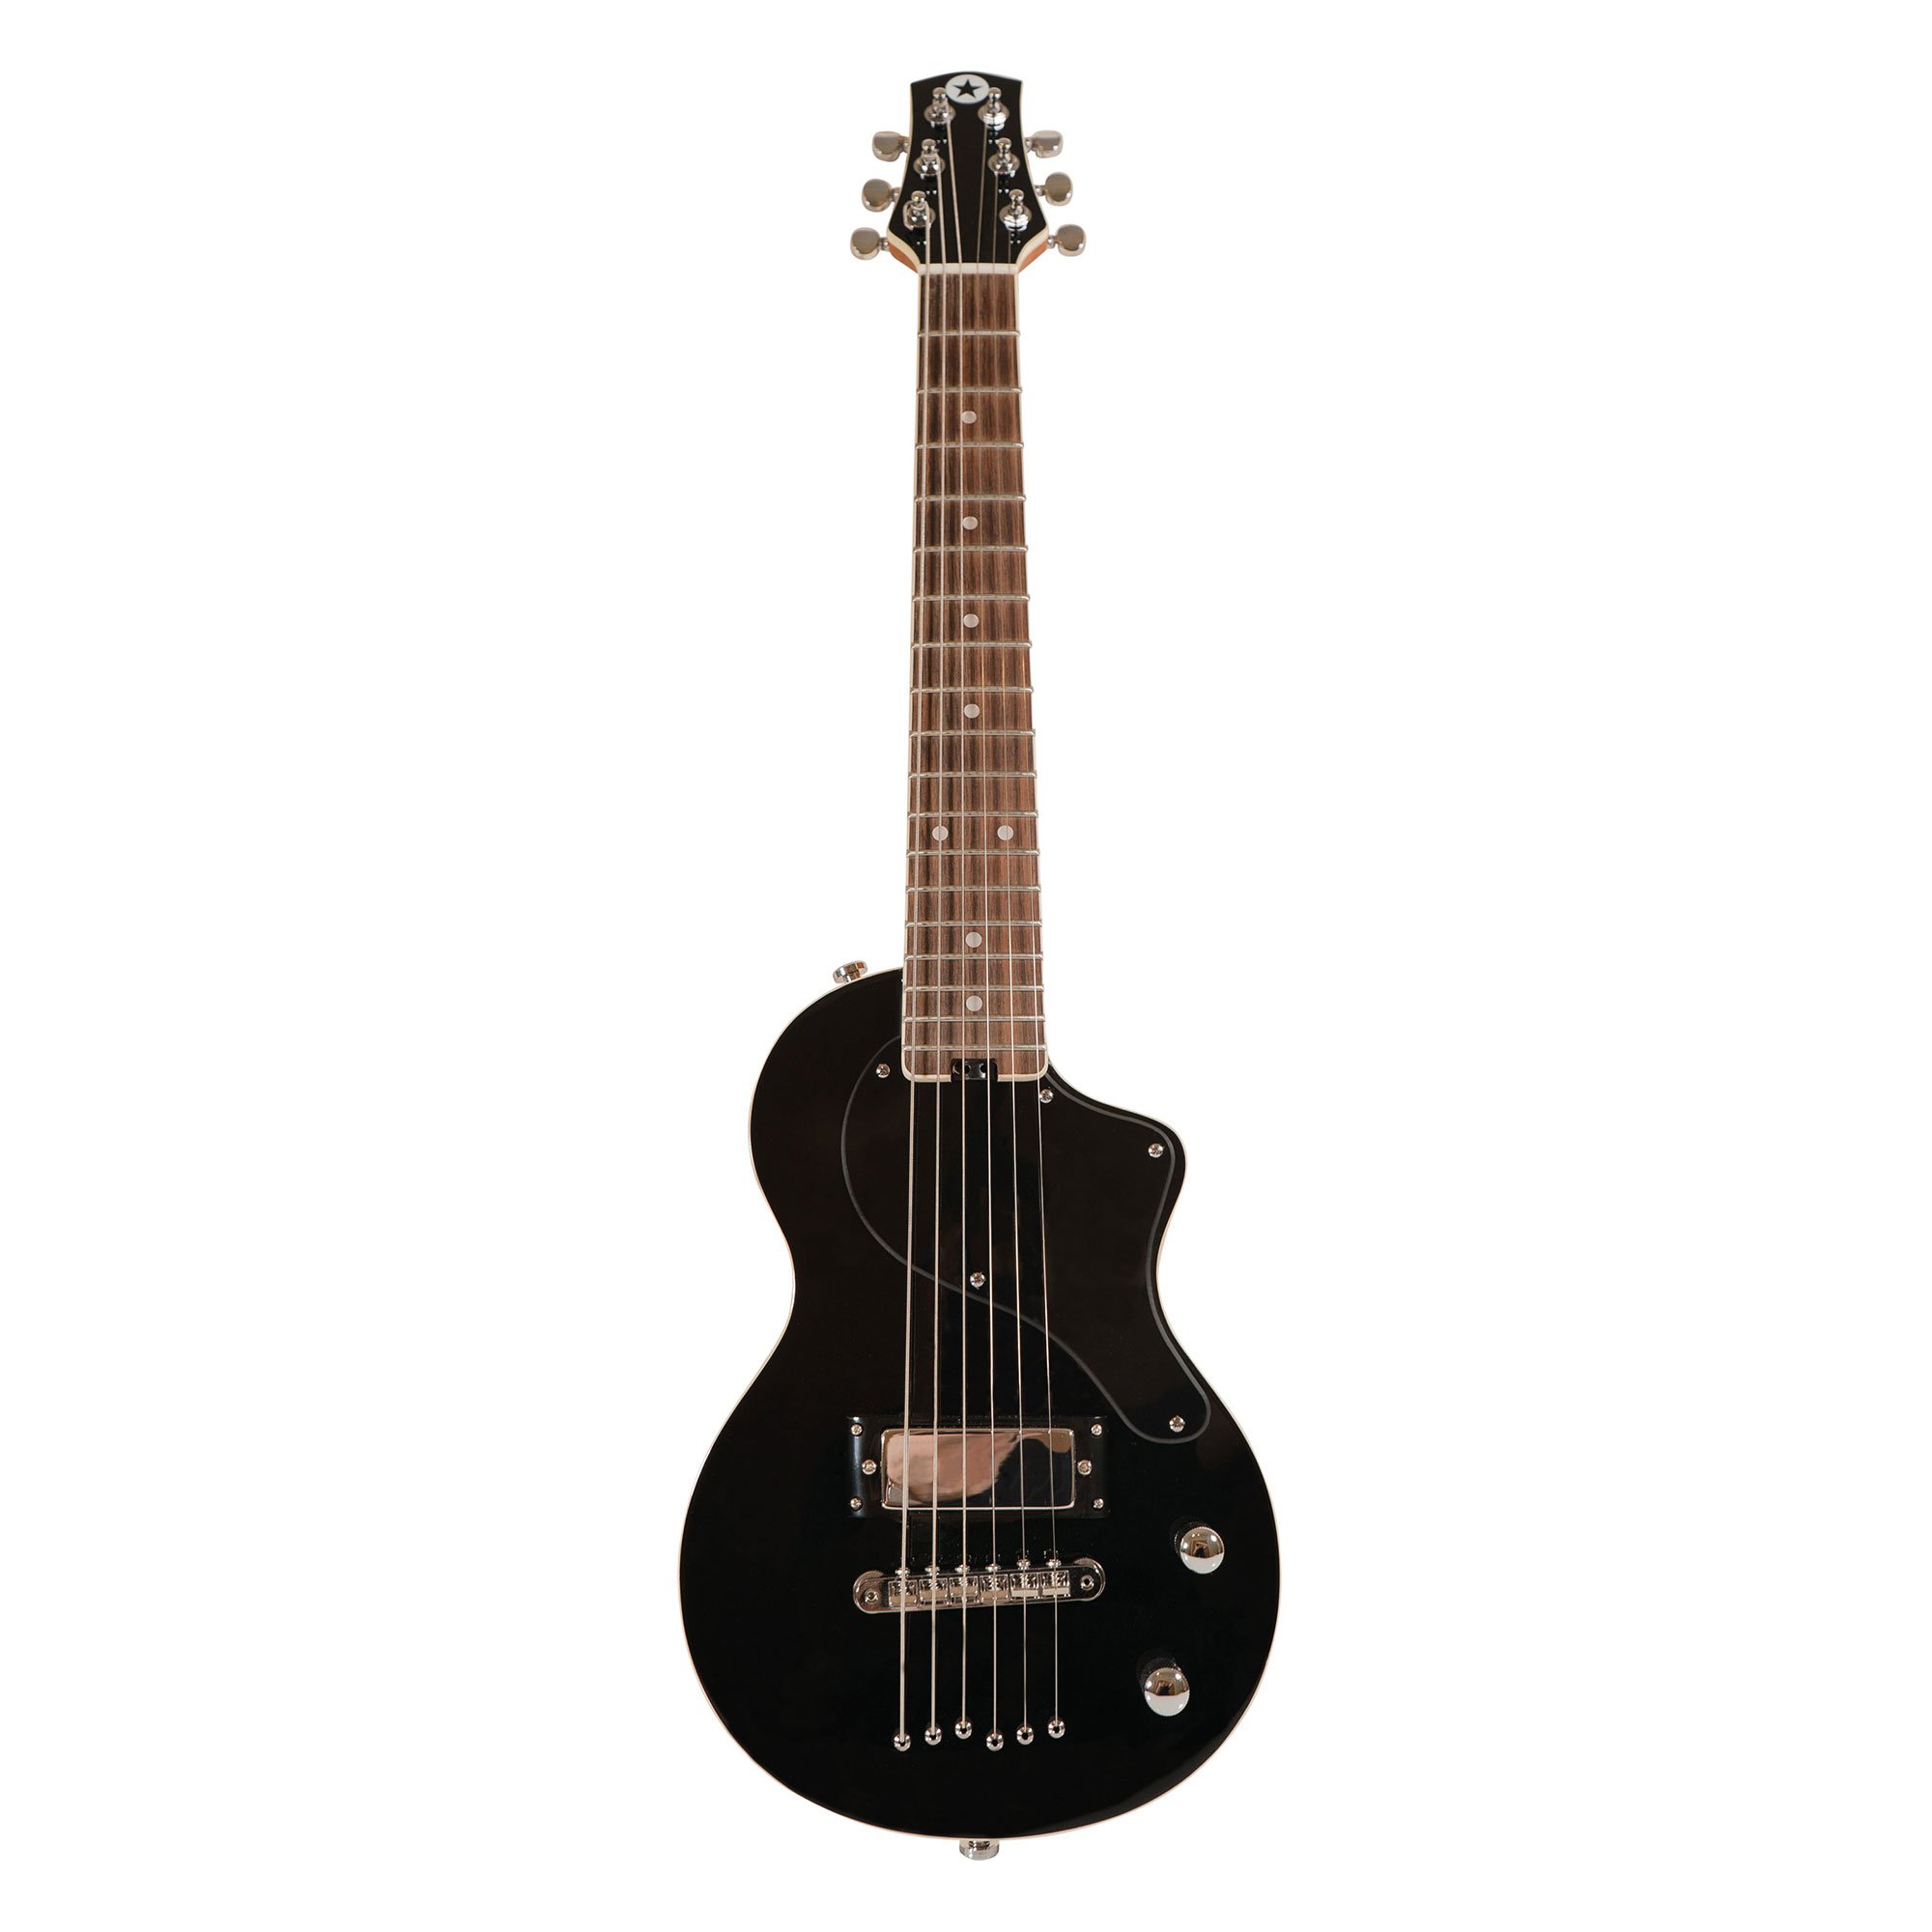 Køb Blackstar Carry-on Travel Guitar - Sort - Pris 1495.00 kr.